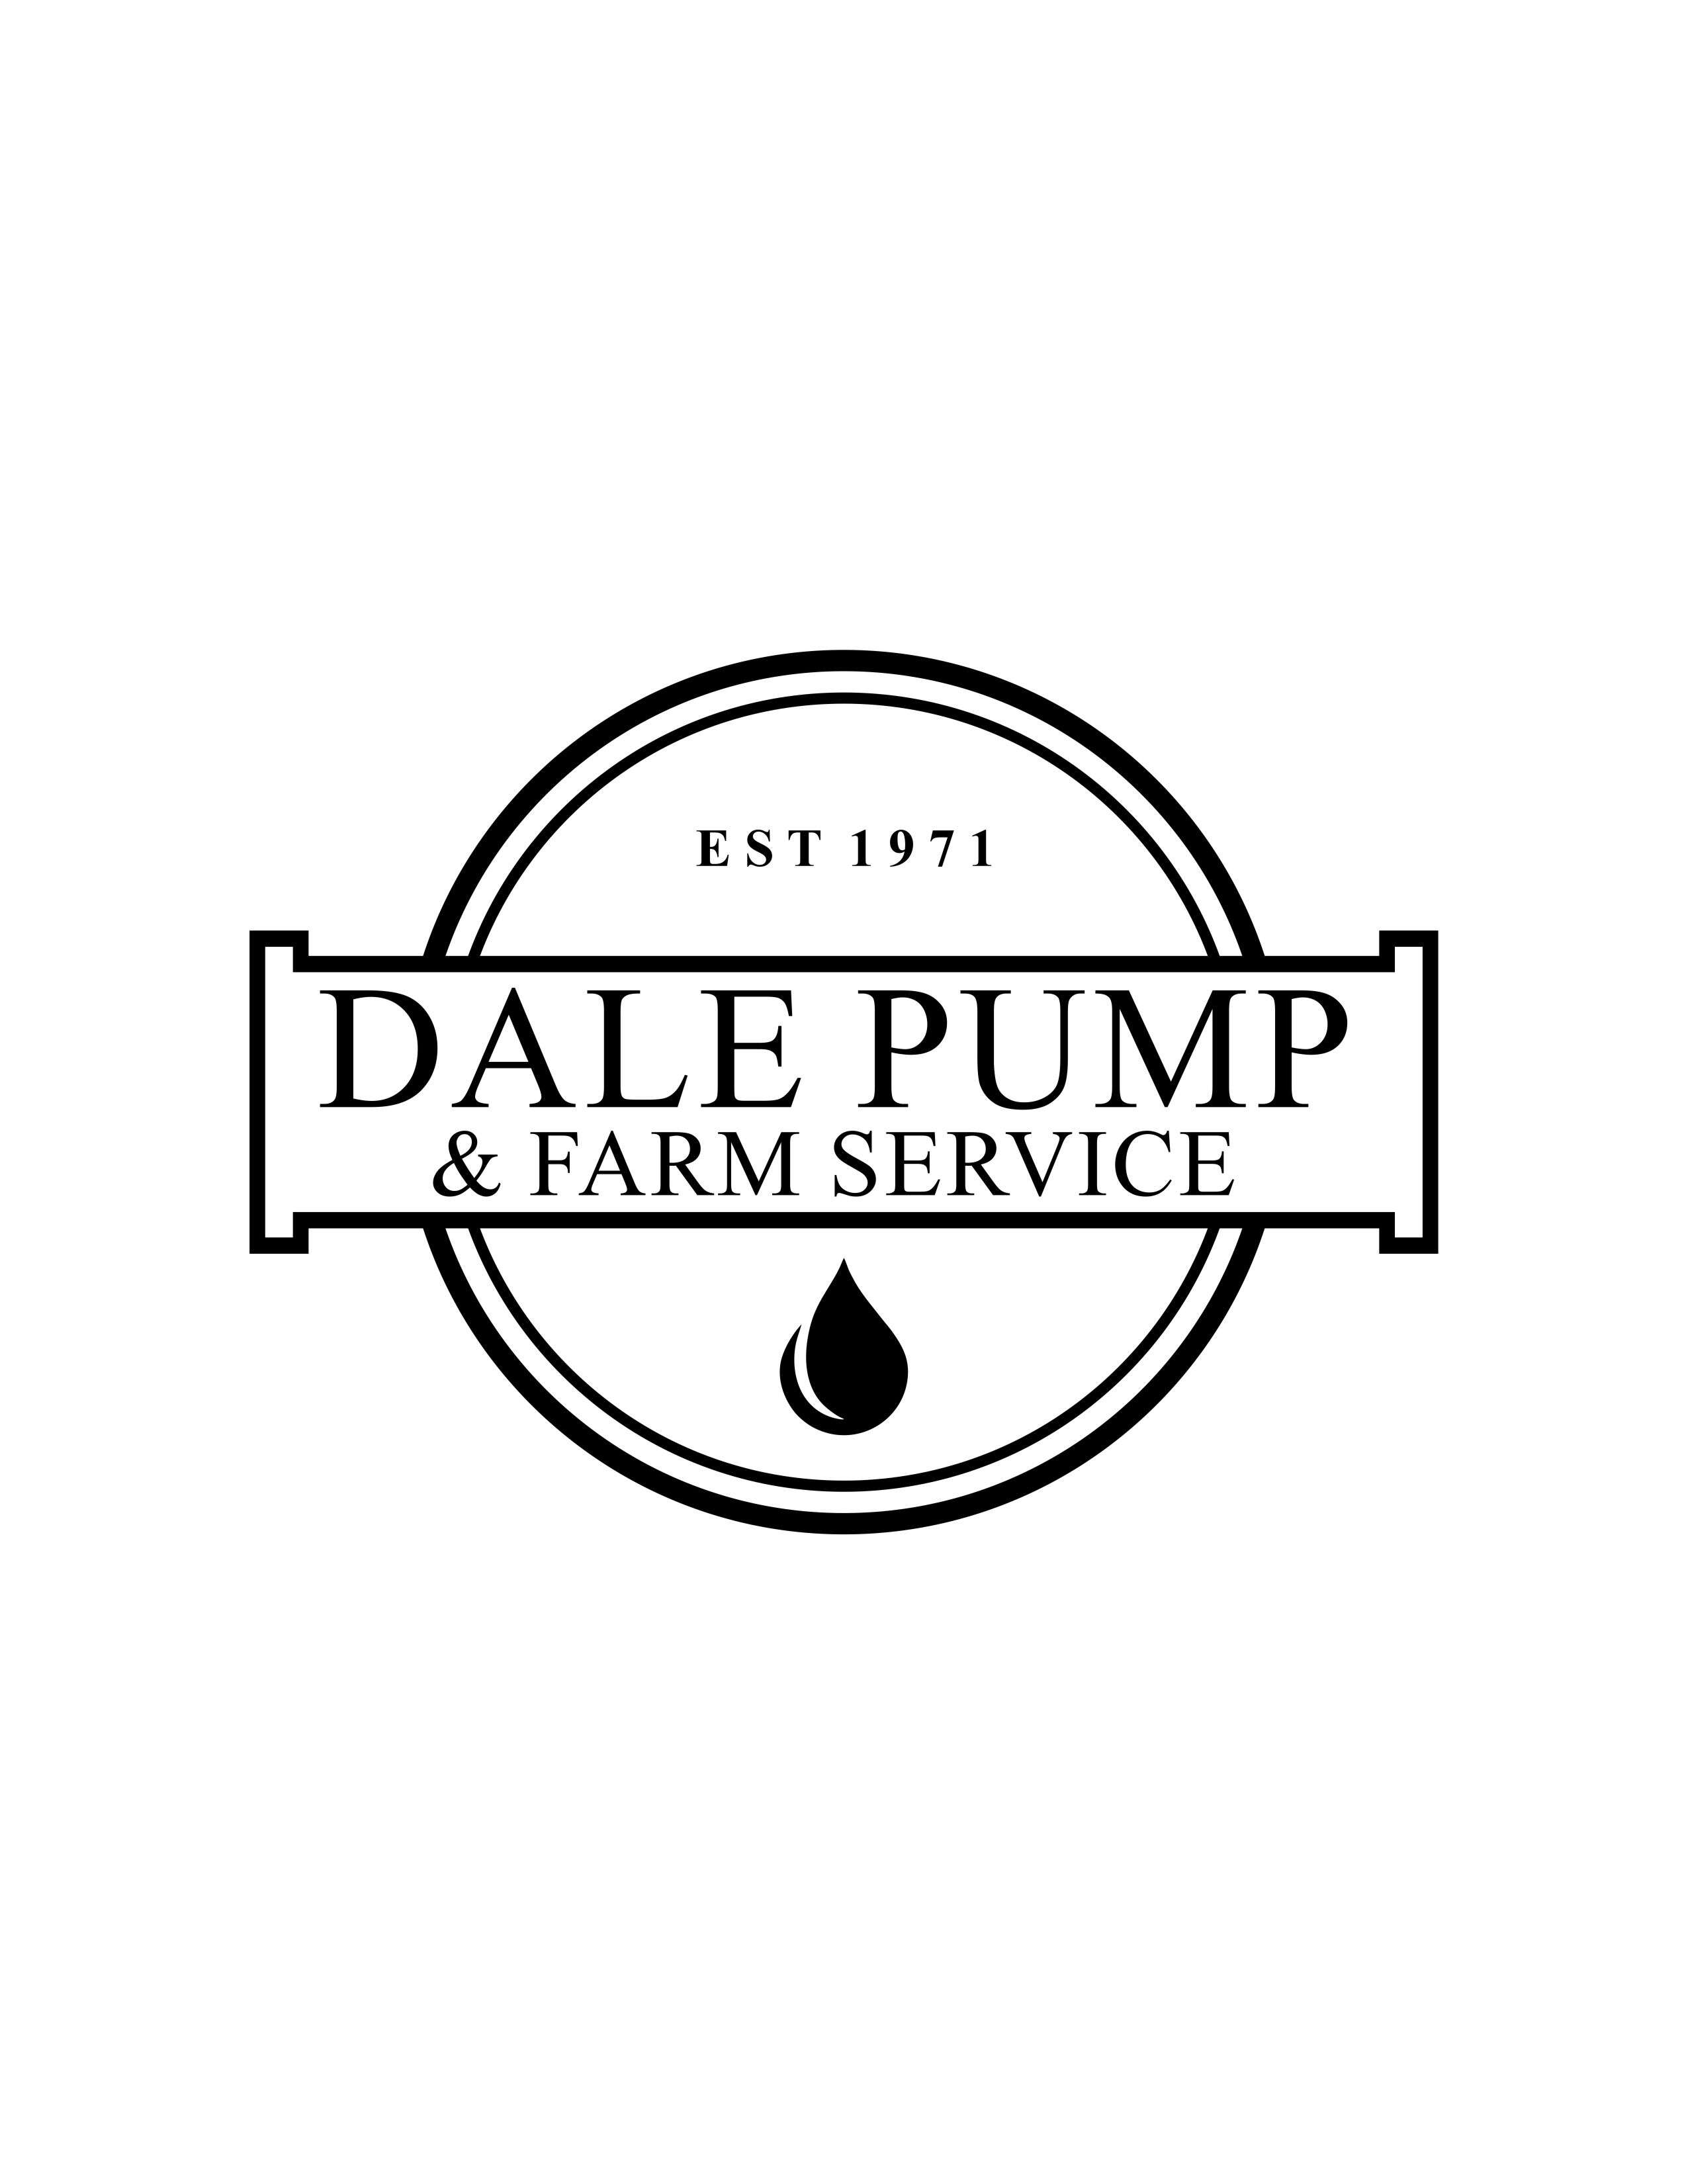 Dale Pump